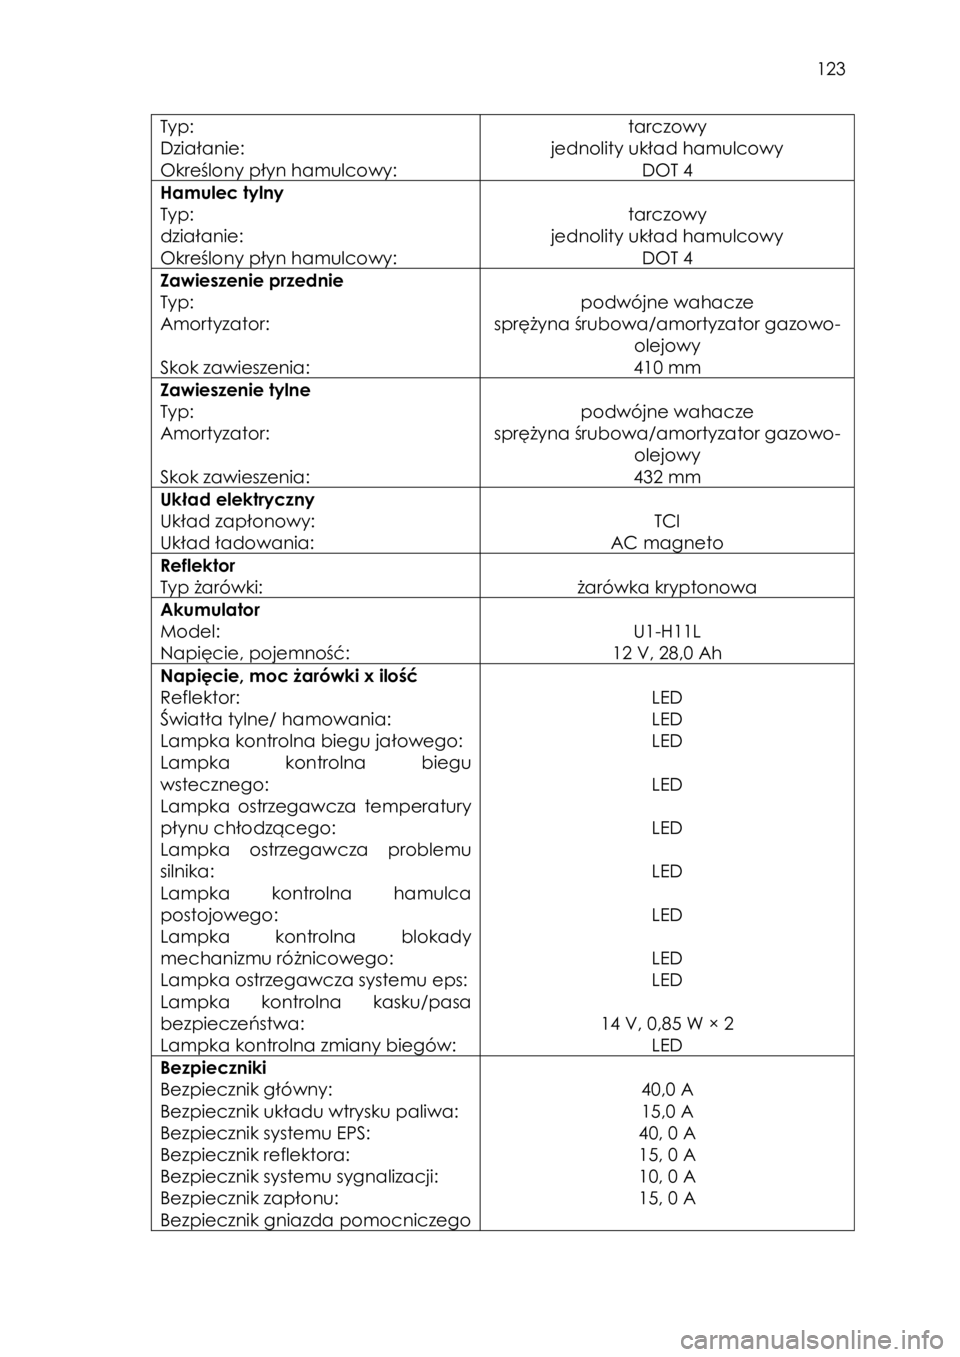 YAMAHA YXZ1000R 2016  Instrukcja obsługi (in Polish)  123 
Typ:  
Działanie: 
Określony płyn hamulcowy: 
tarczowy 
jednolity układ hamulcowy 
DOT 4 
Hamulec tylny 
Typ:  
działanie: 
Określony płyn hamulcowy: 
 
tarczowy 
jednolity układ hamulco